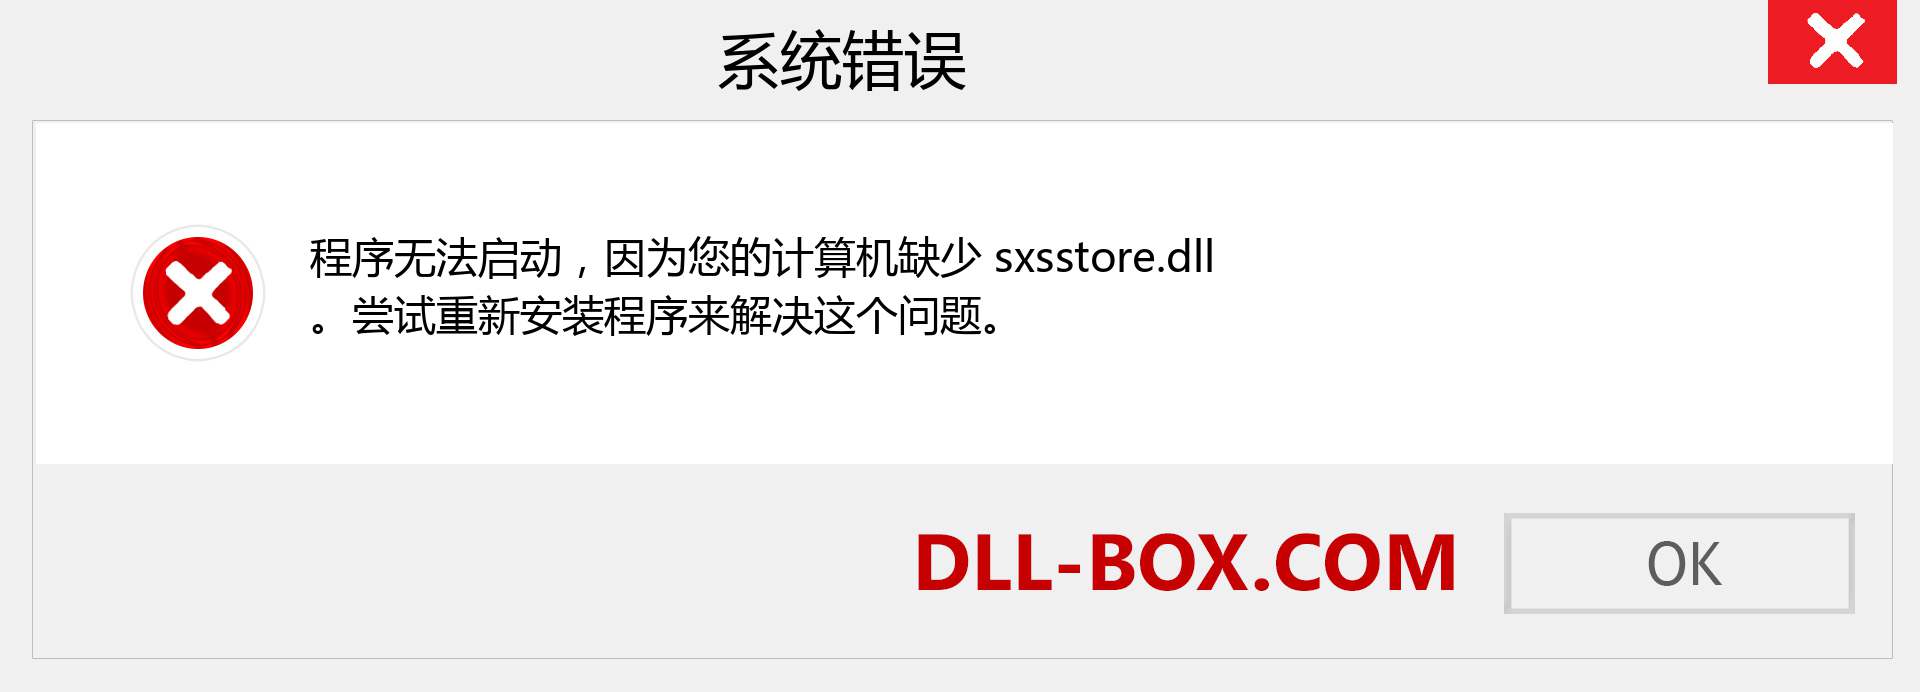 sxsstore.dll 文件丢失？。 适用于 Windows 7、8、10 的下载 - 修复 Windows、照片、图像上的 sxsstore dll 丢失错误